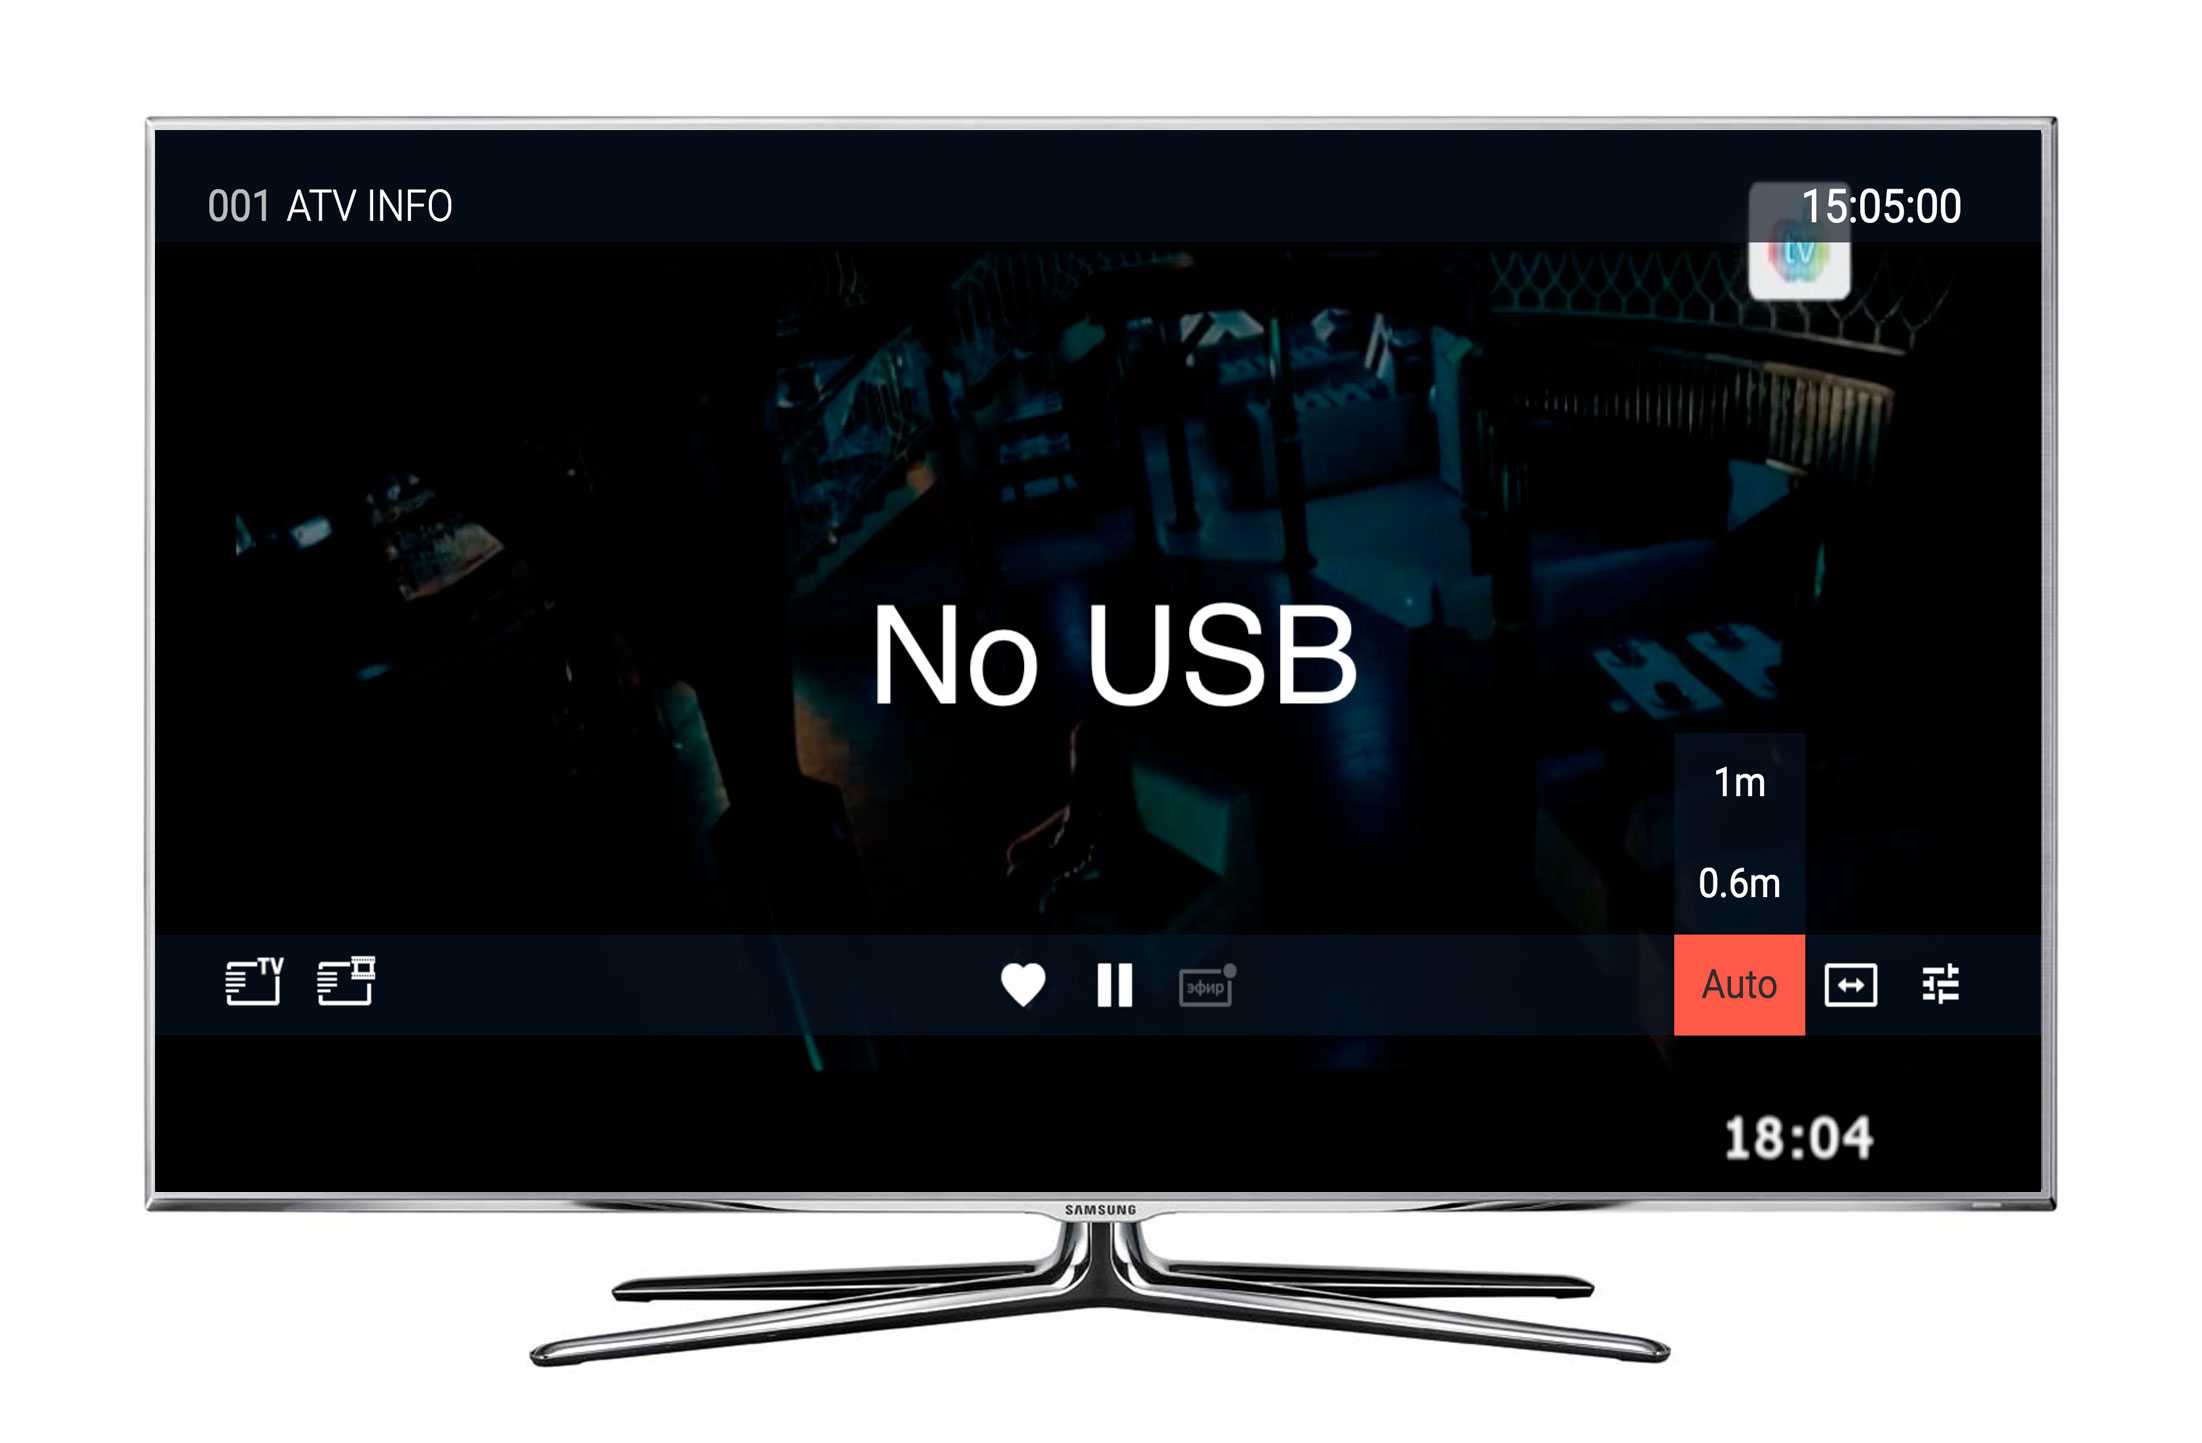 Как подключить usb-флеш-накопитель к телевизору? как включить и в каком формате нужно форматировать? почему не воспроизводит звук?